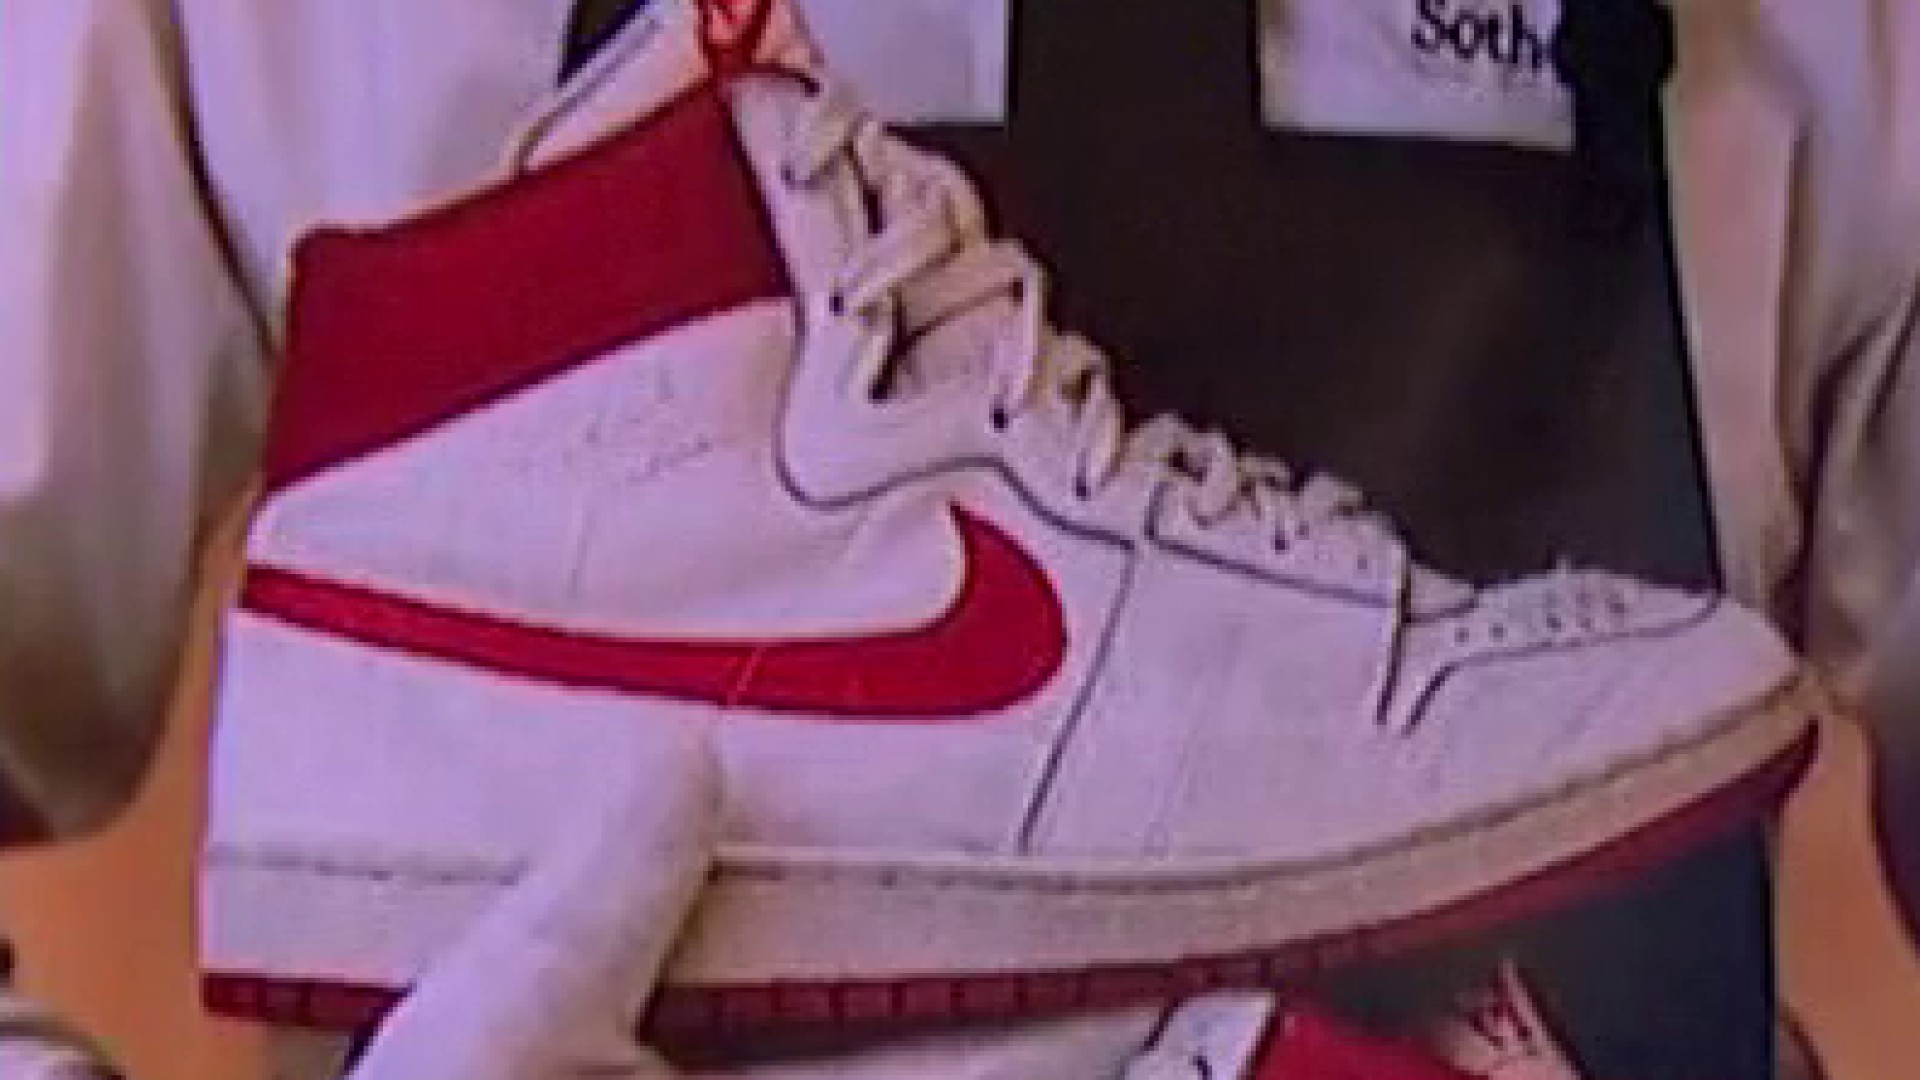 Michael Jordan's 1984 Nike Air Ships sell at $1.47 million at auction